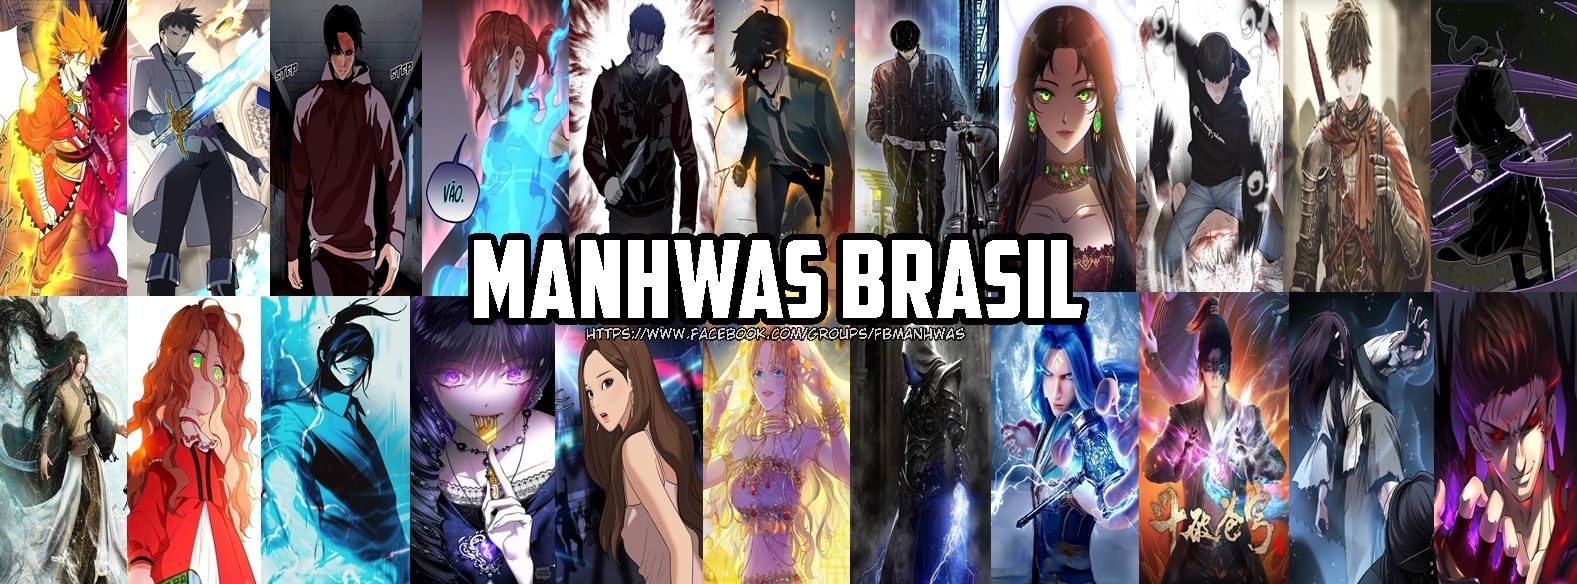 Manhwas Brasil【Webtoon, Novel, Donghua, Manhua, Manhwa, Mangás, e +】